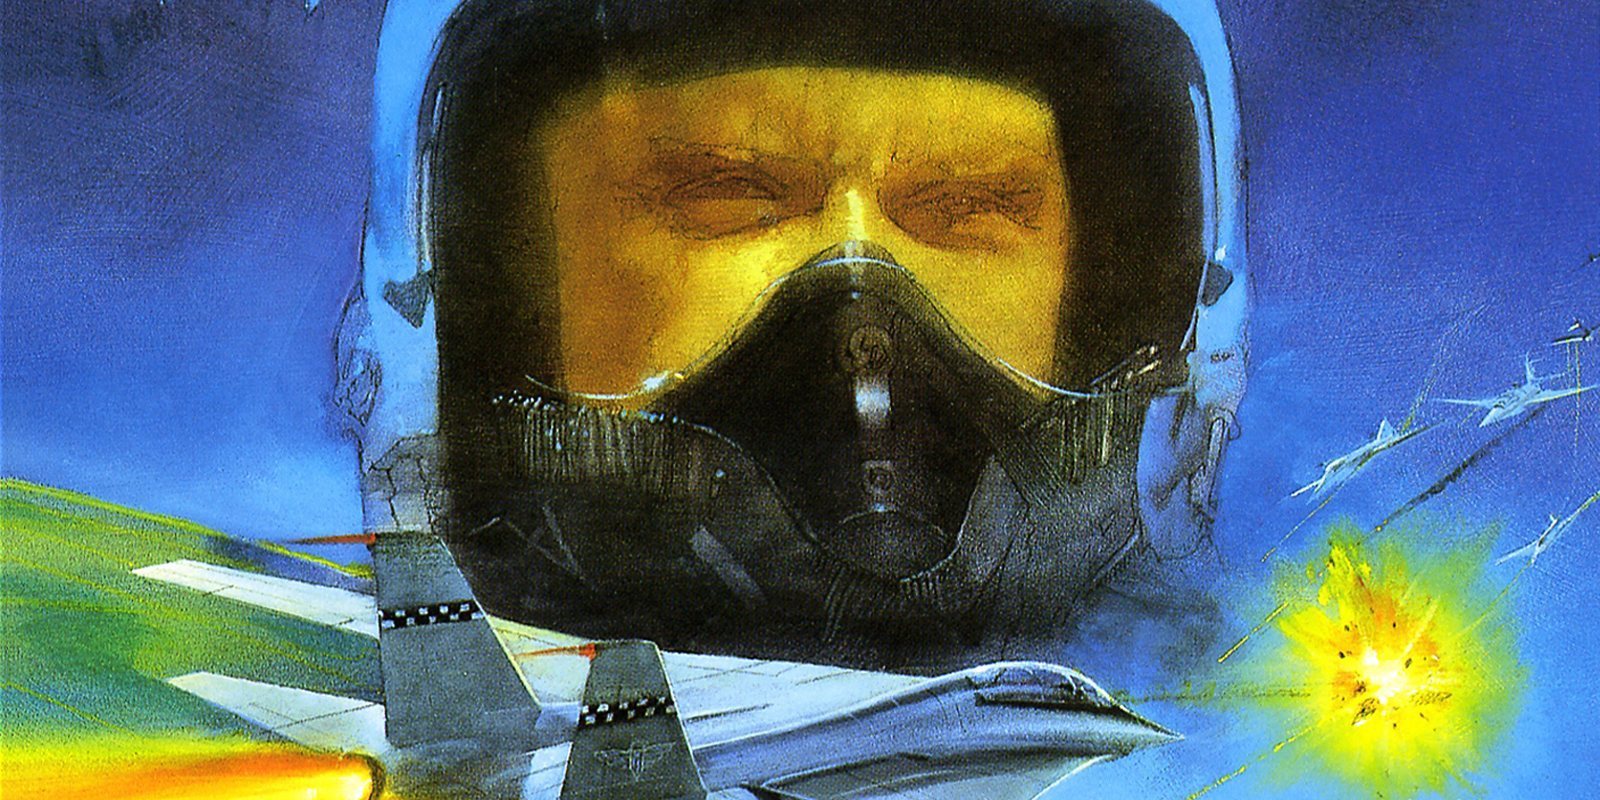 RETRO 'Captain Skyhawk', analizamos este desconocido shoot'em up de Rare para NES